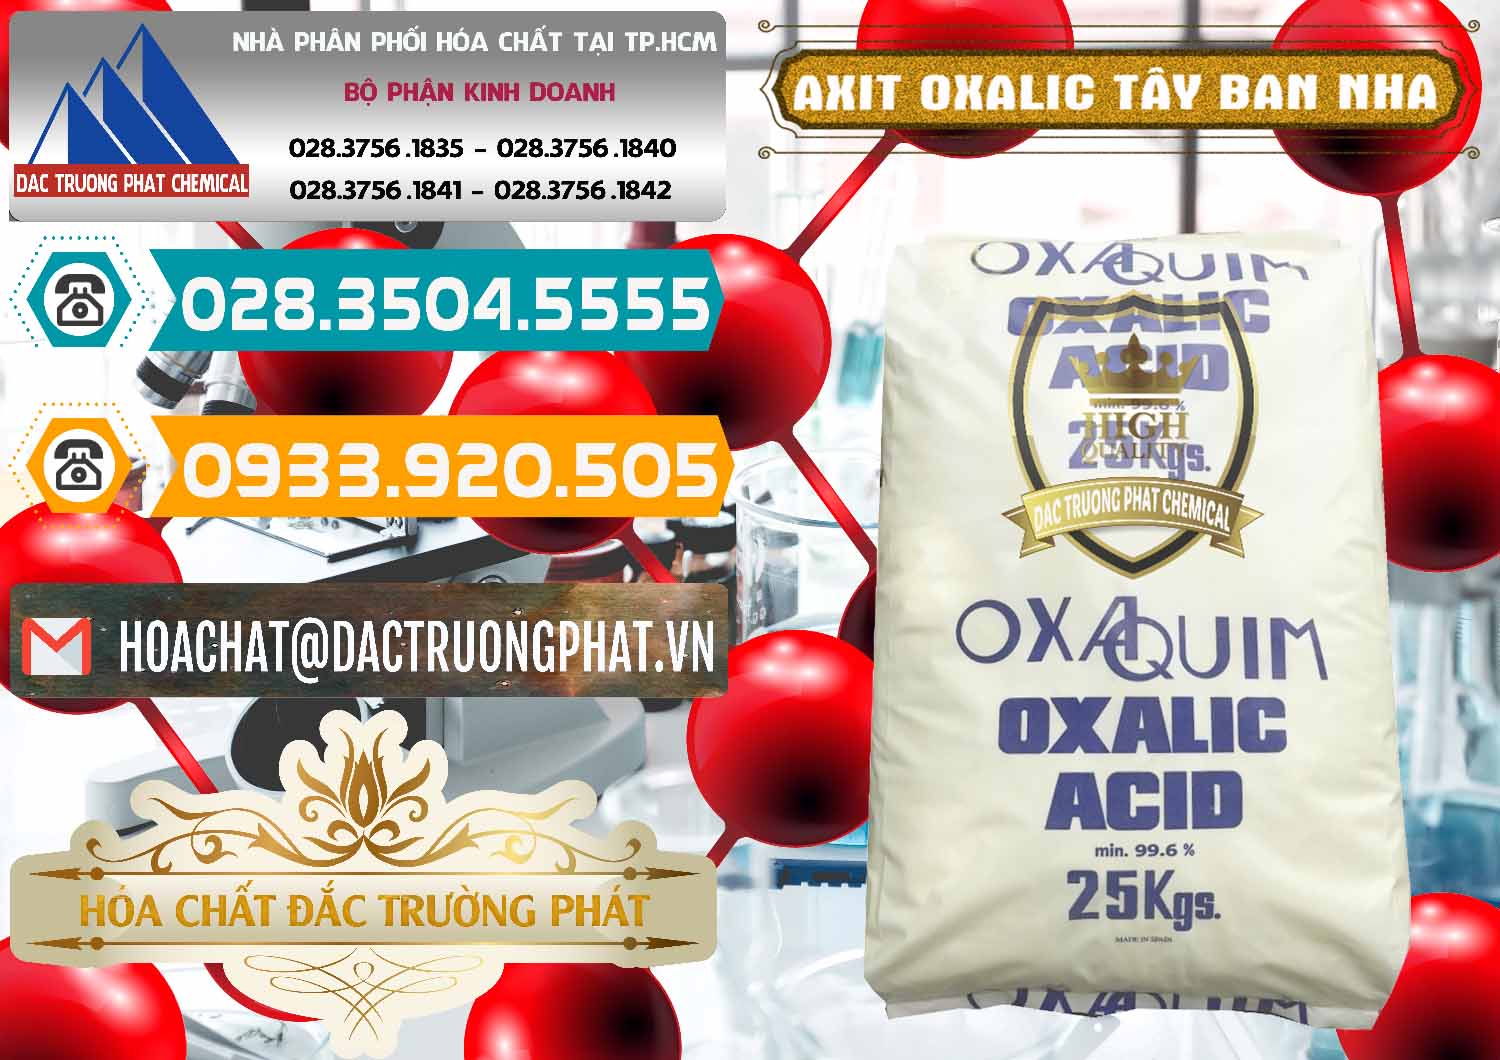 Nơi chuyên kinh doanh & bán Acid Oxalic – Axit Oxalic 99.6% Tây Ban Nha Spain - 0269 - Chuyên phân phối & nhập khẩu hóa chất tại TP.HCM - congtyhoachat.vn